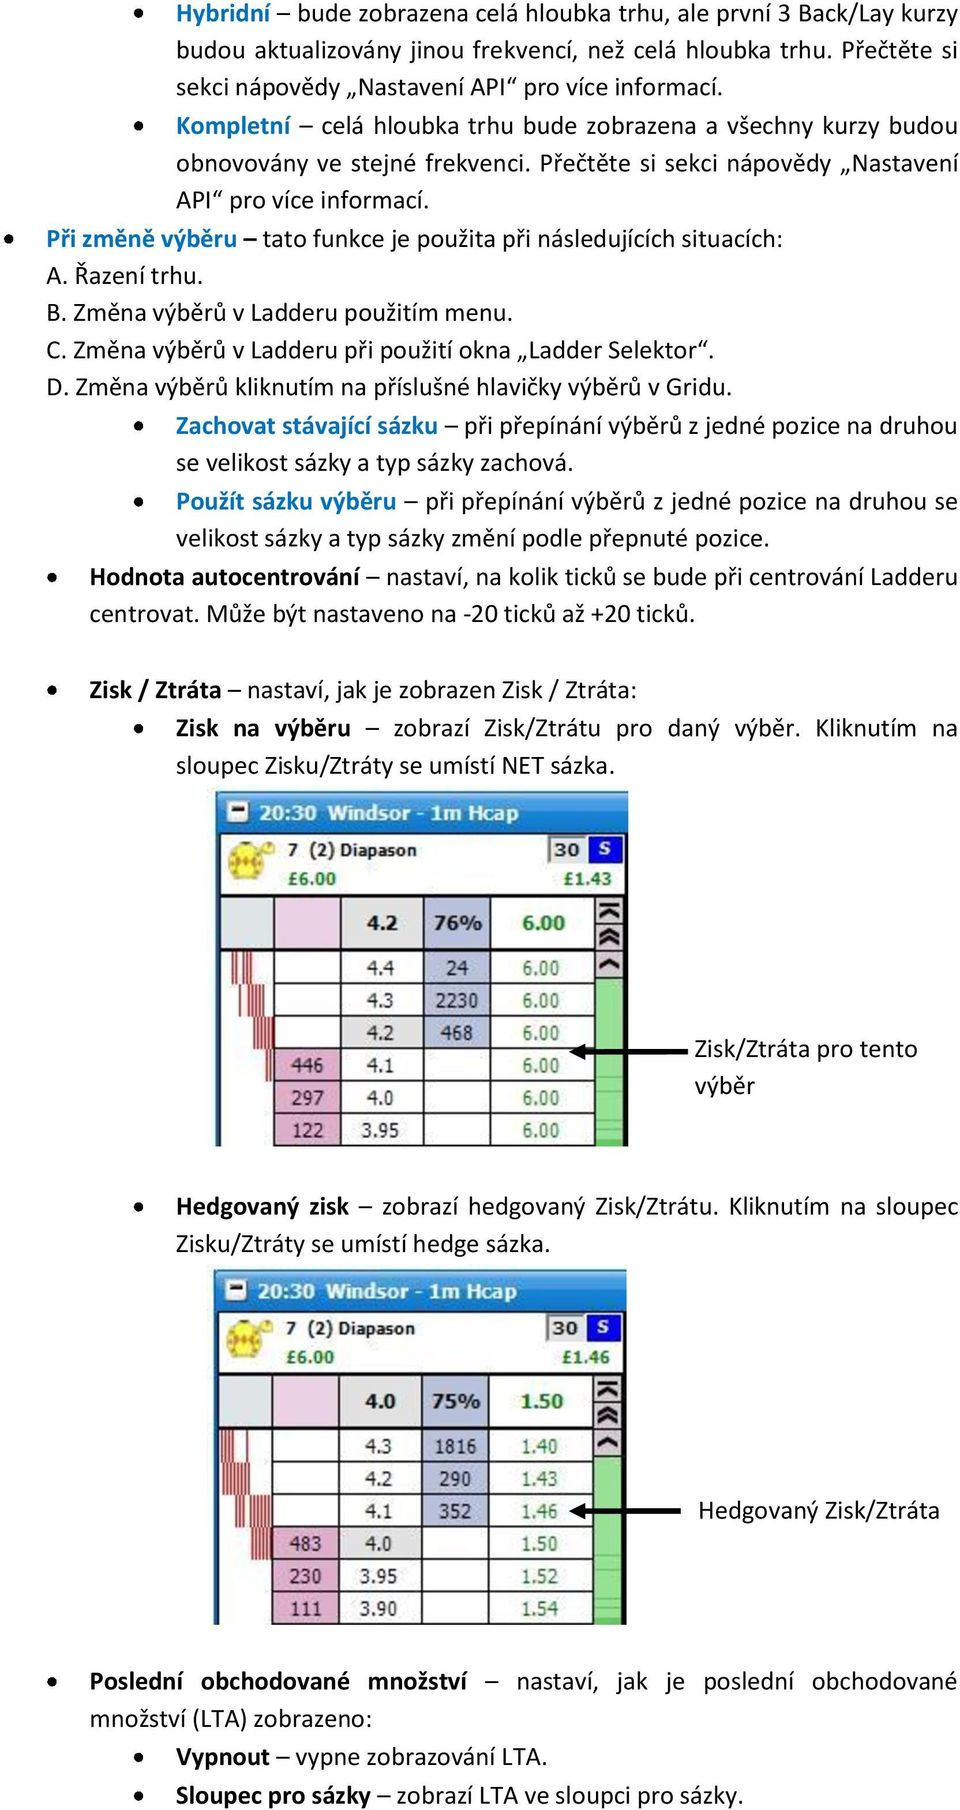 Při změně výběru tato funkce je použita při následujících situacích: A. Řazení trhu. B. Změna výběrů v Ladderu použitím menu. C. Změna výběrů v Ladderu při použití okna Ladder Selektor. D.